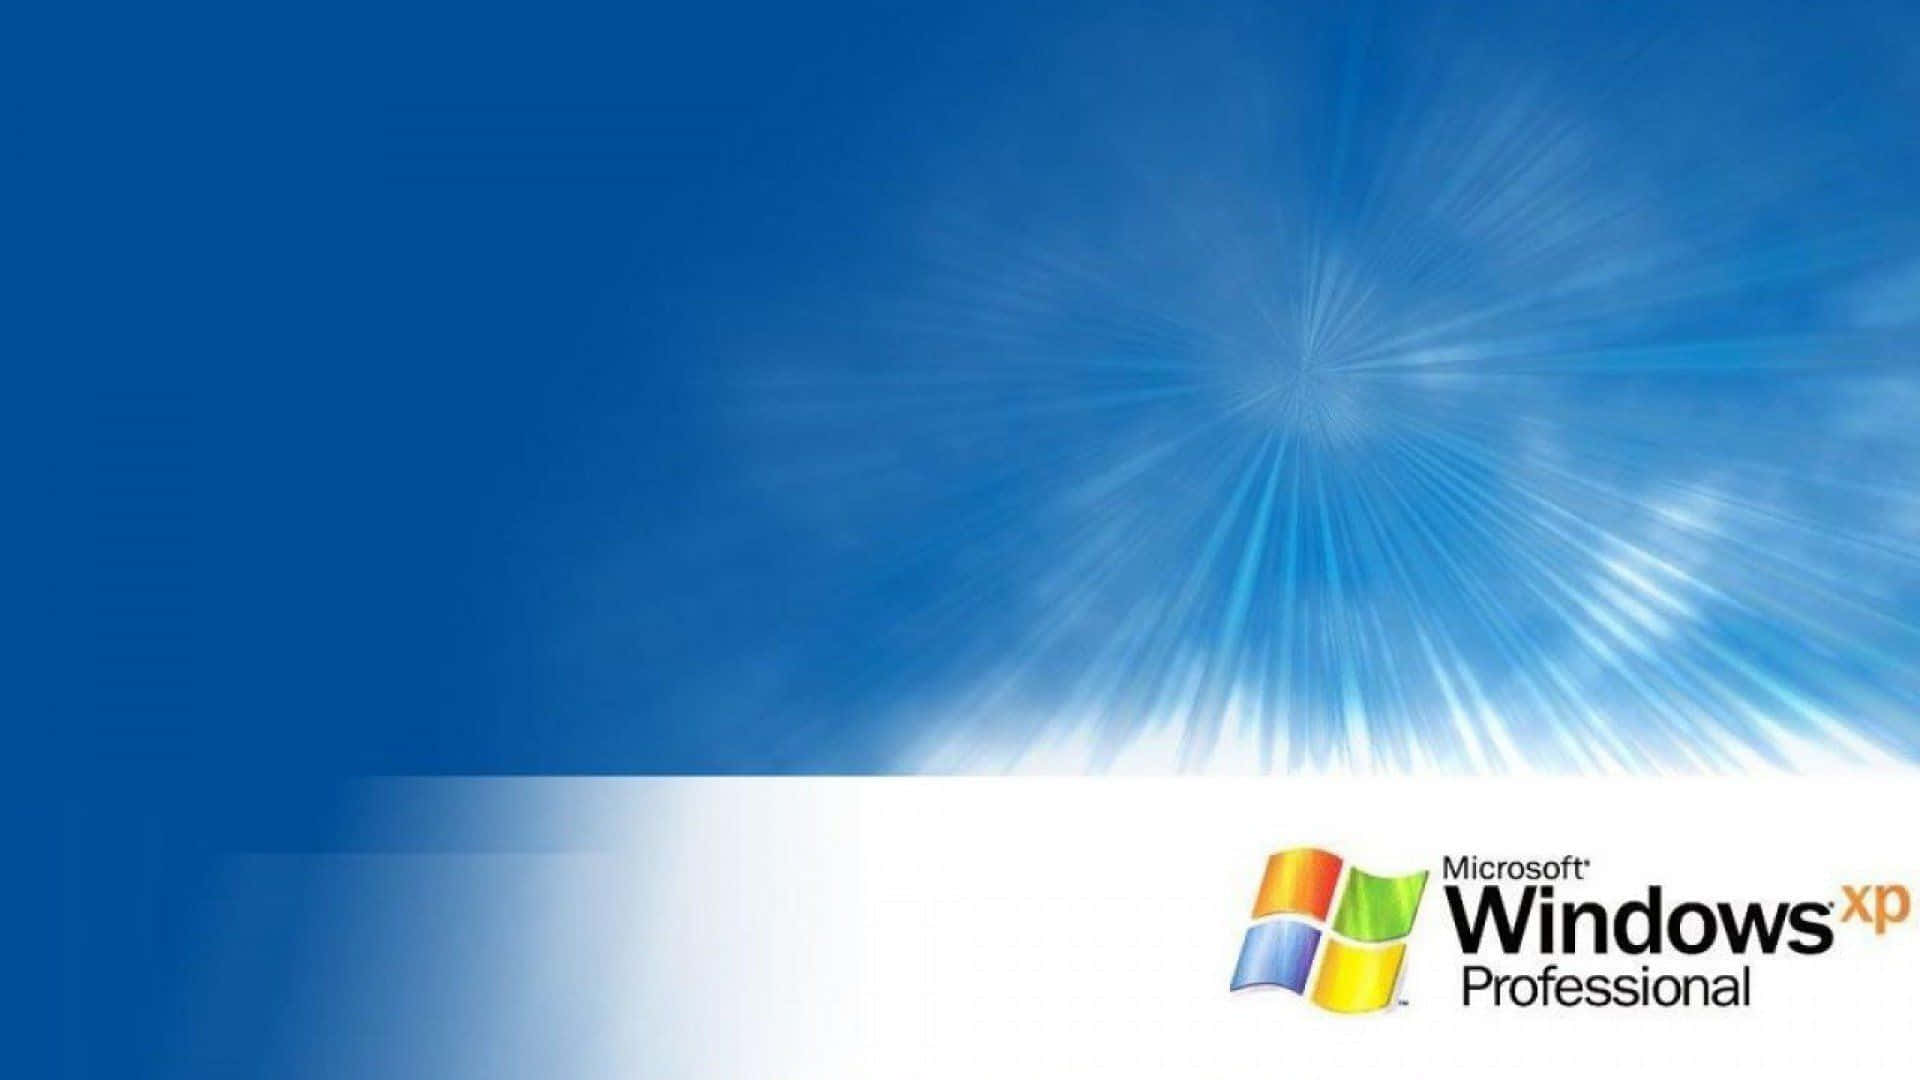 Windowsxp: Presentando Una Nueva Era En La Computación.